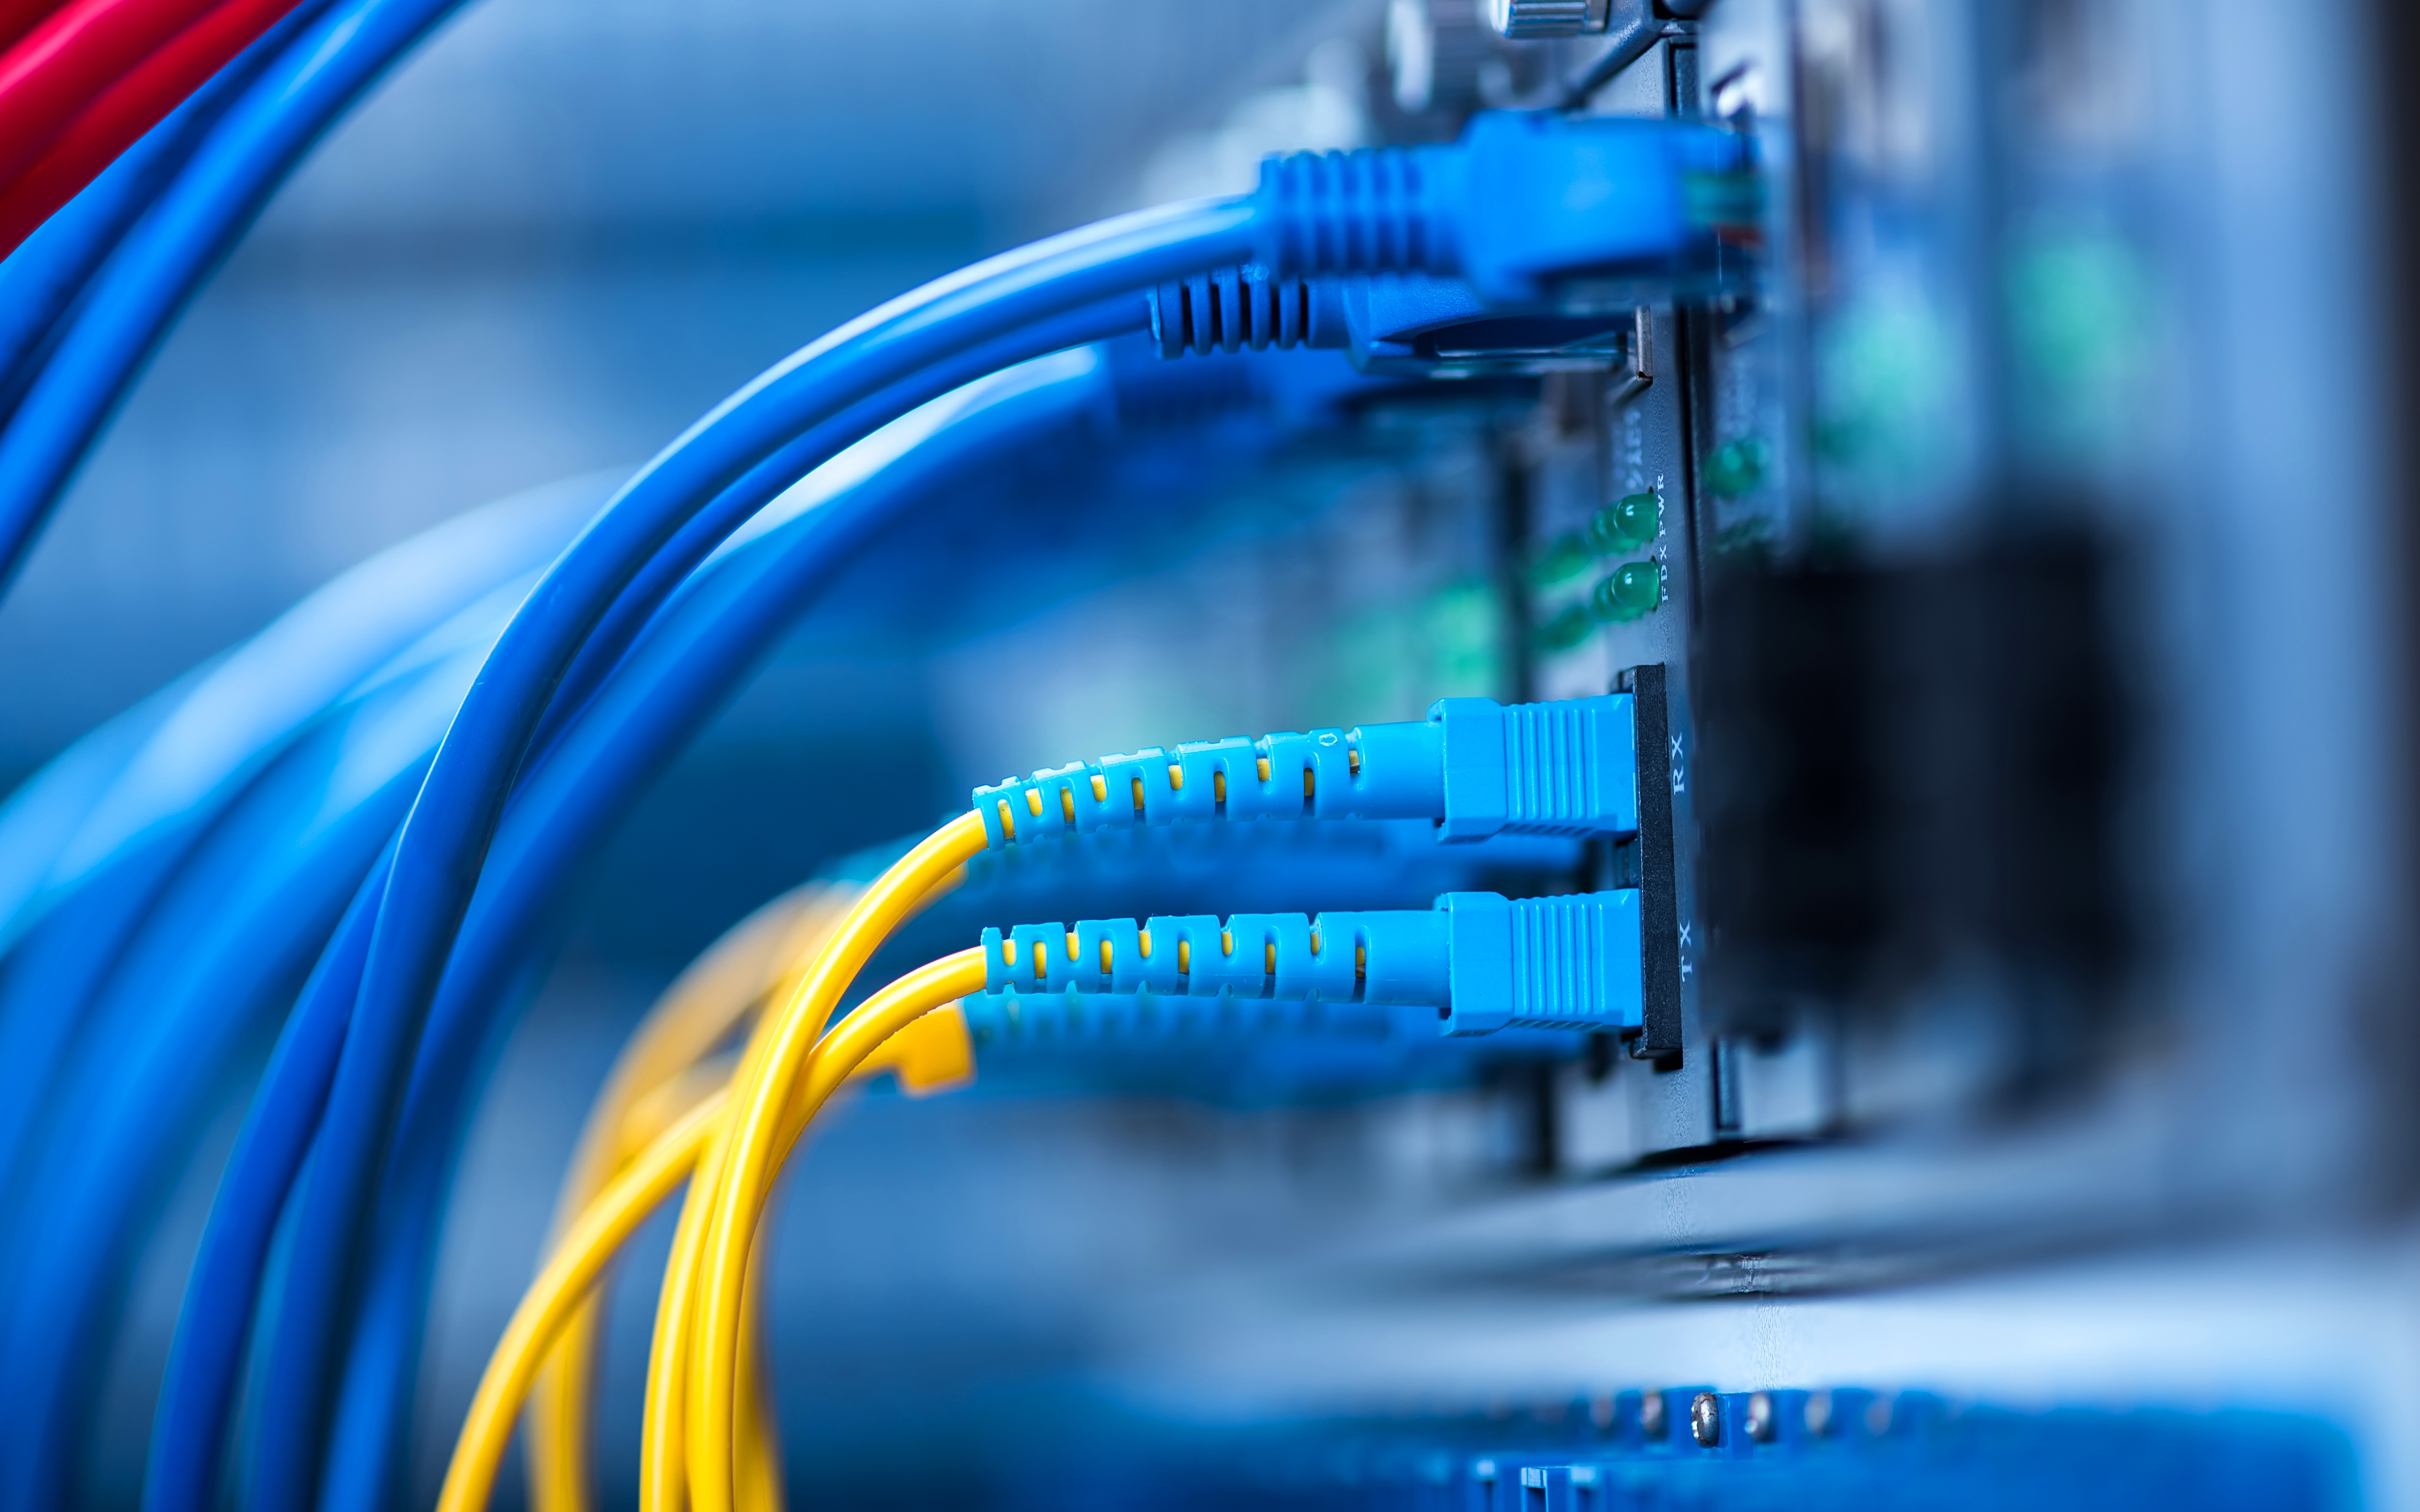 fond d'écran de réseau informatique,bleu,câbles réseau,lumière,électronique,bleu électrique